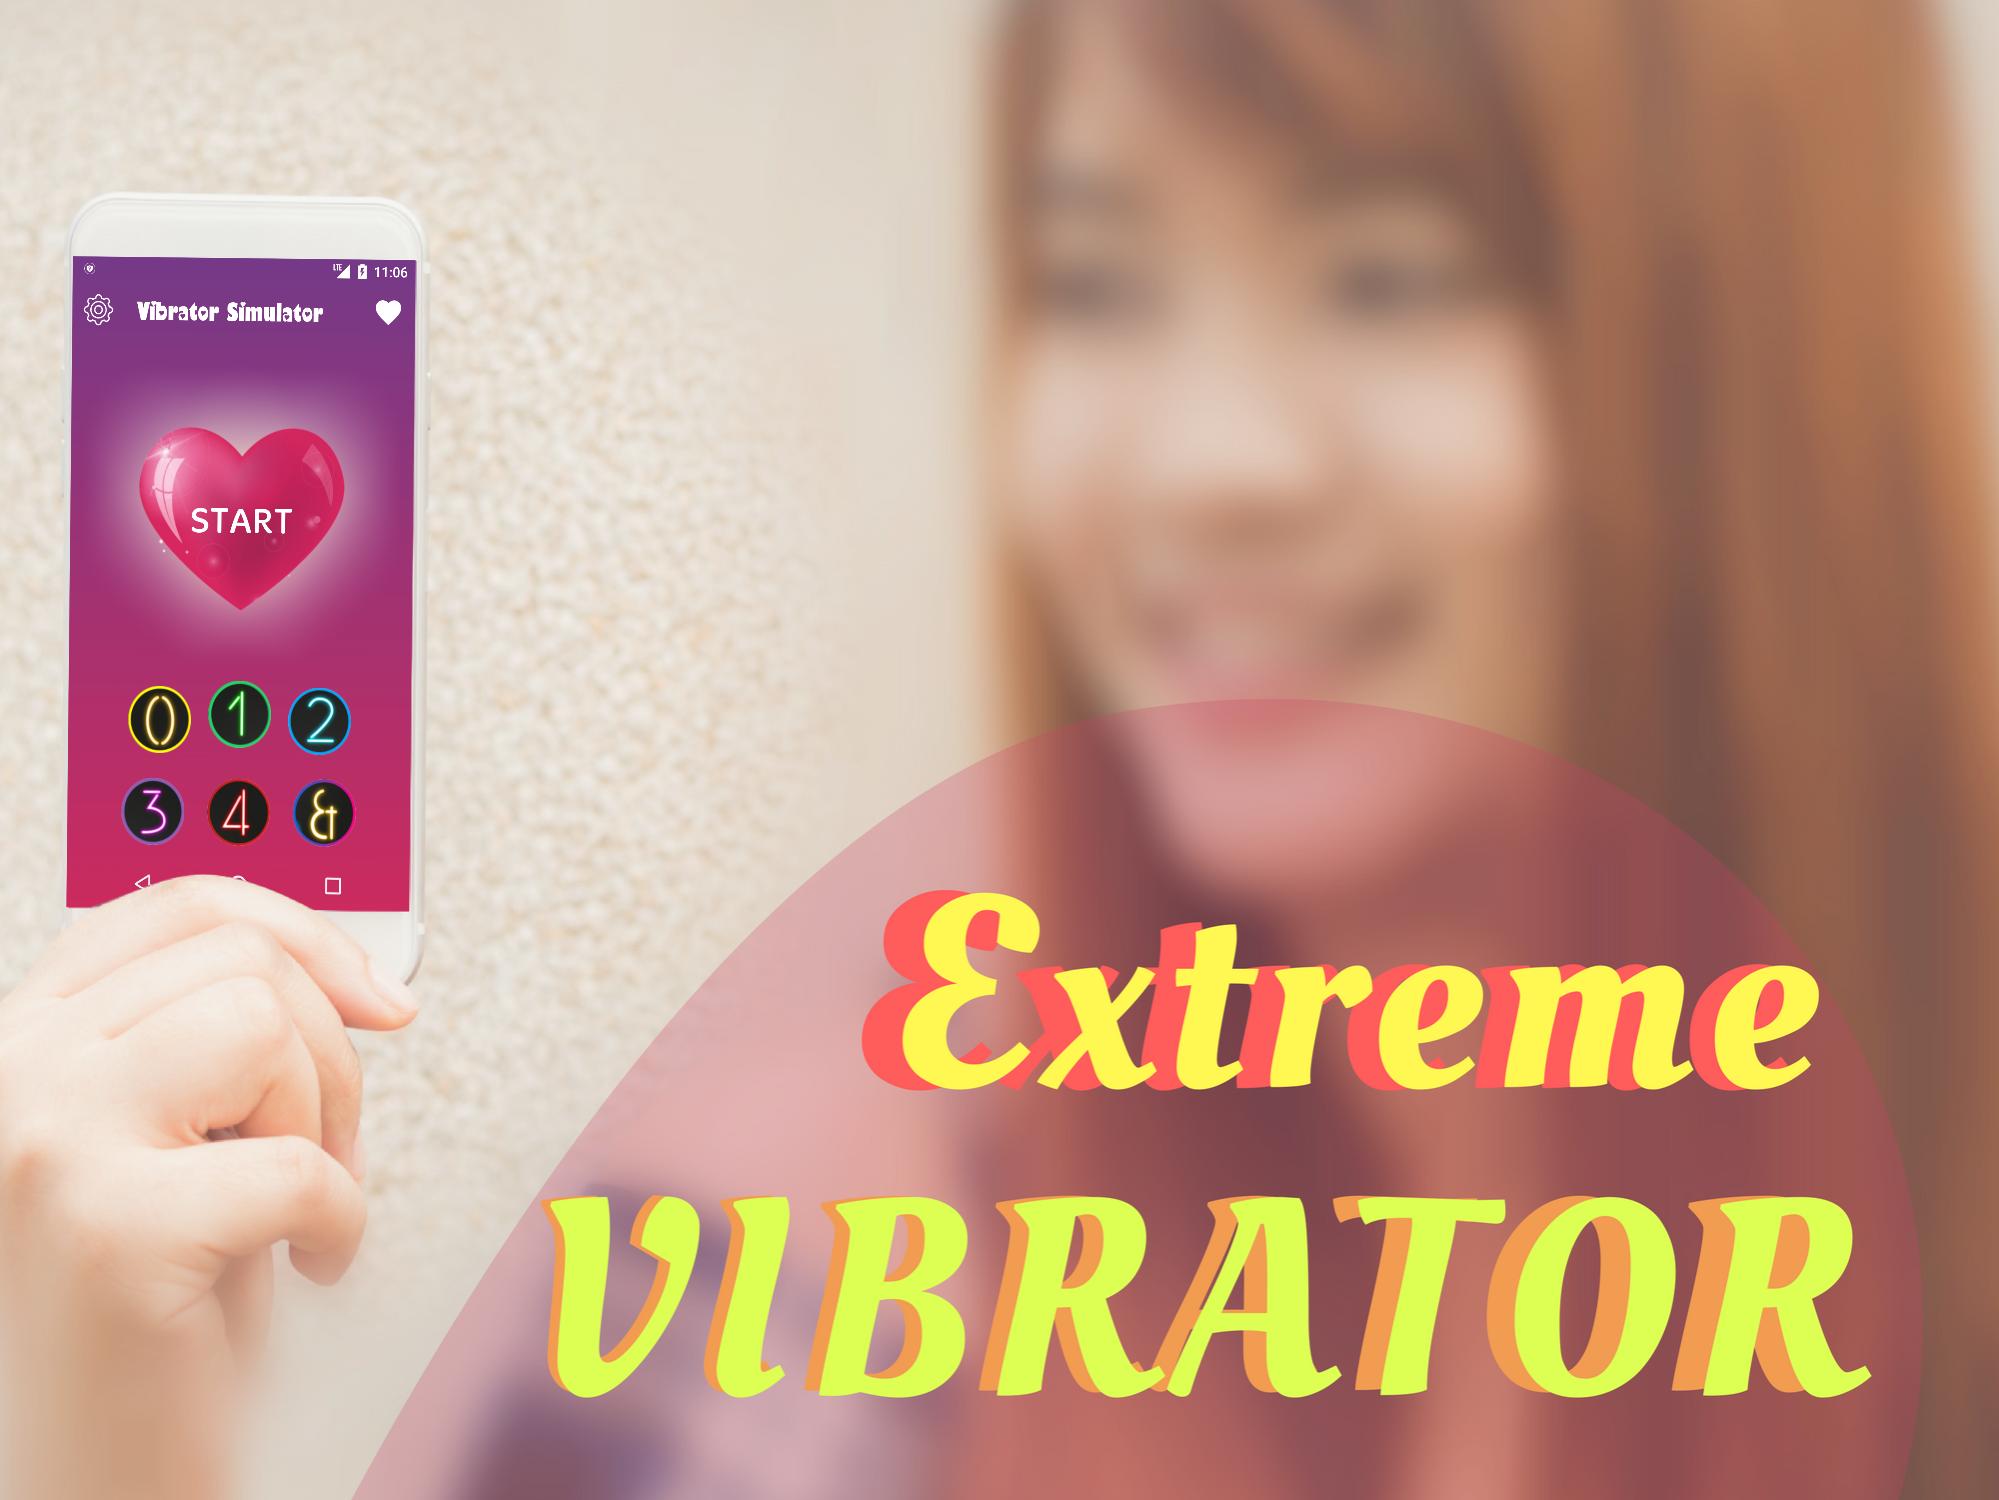 Women Vibration. Массаж вибратион. Vibration massage. Joysy – massage Vibration app for men and women. Вибратор для женщин видео